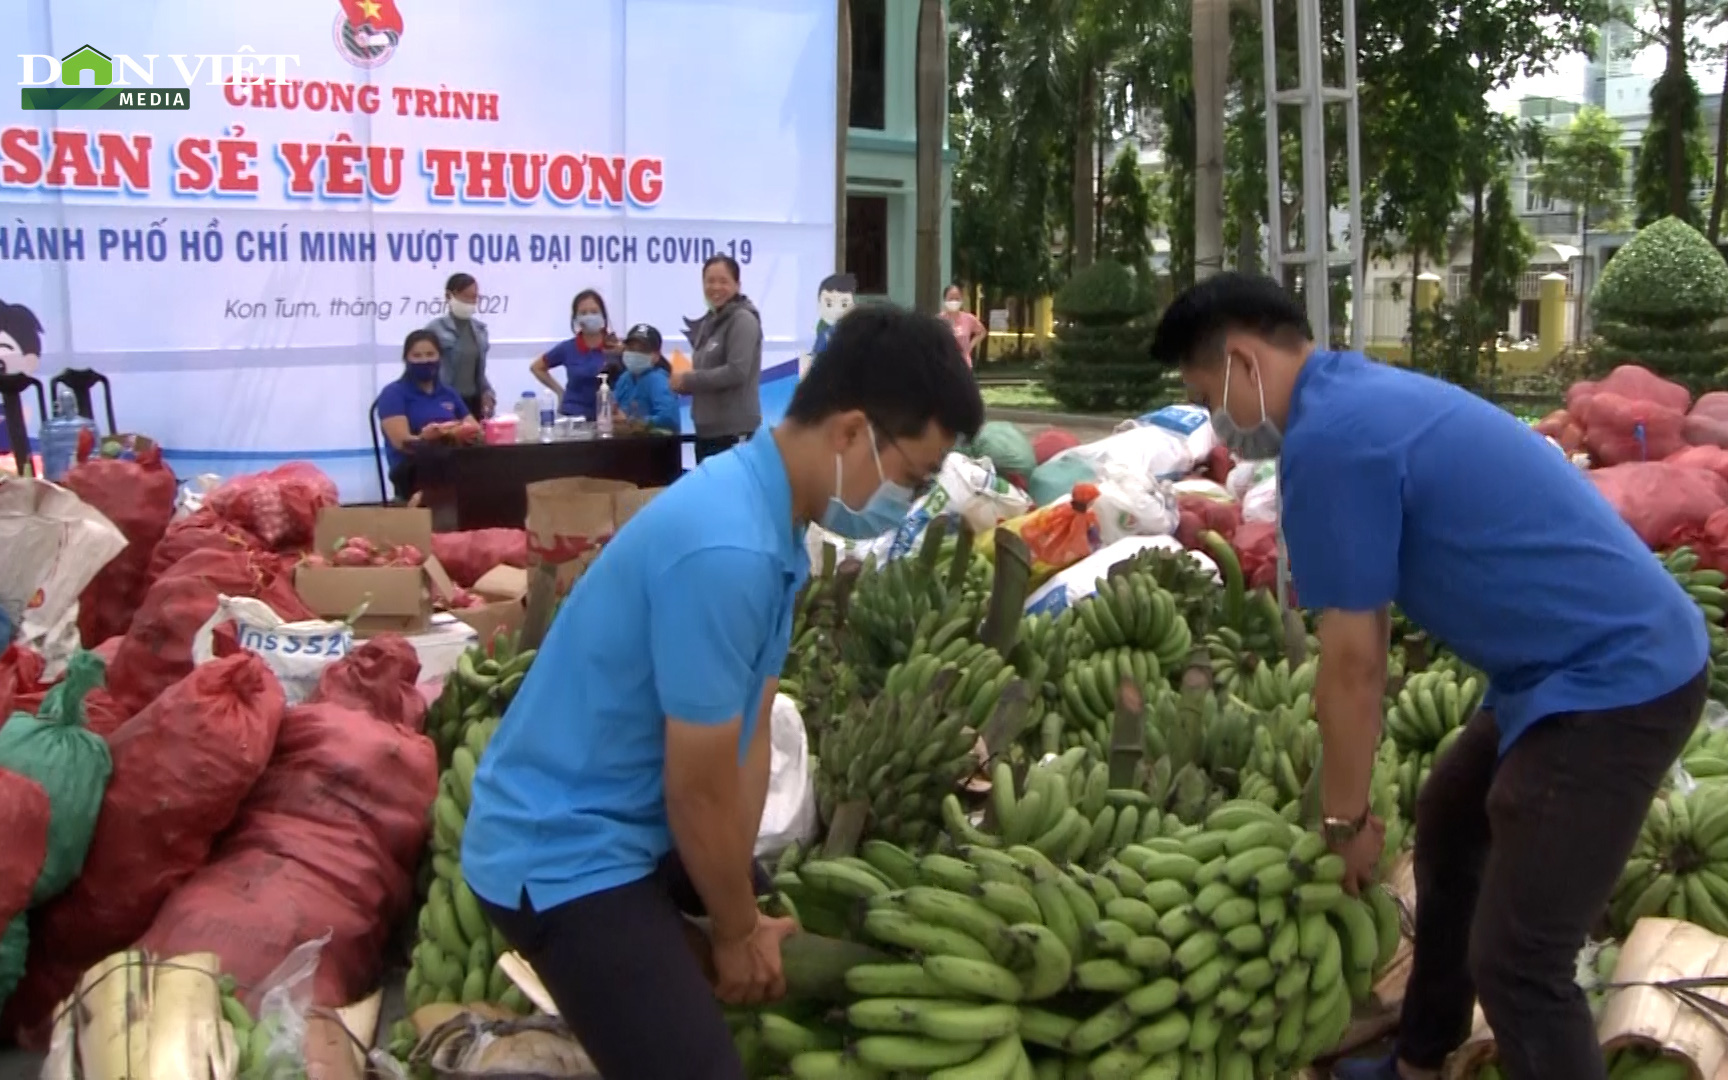 Tuổi trẻ vùng cao biên giới Kon Tum ủng hộ hàng chục tấn nhu yếu phẩm cho TP. HCM